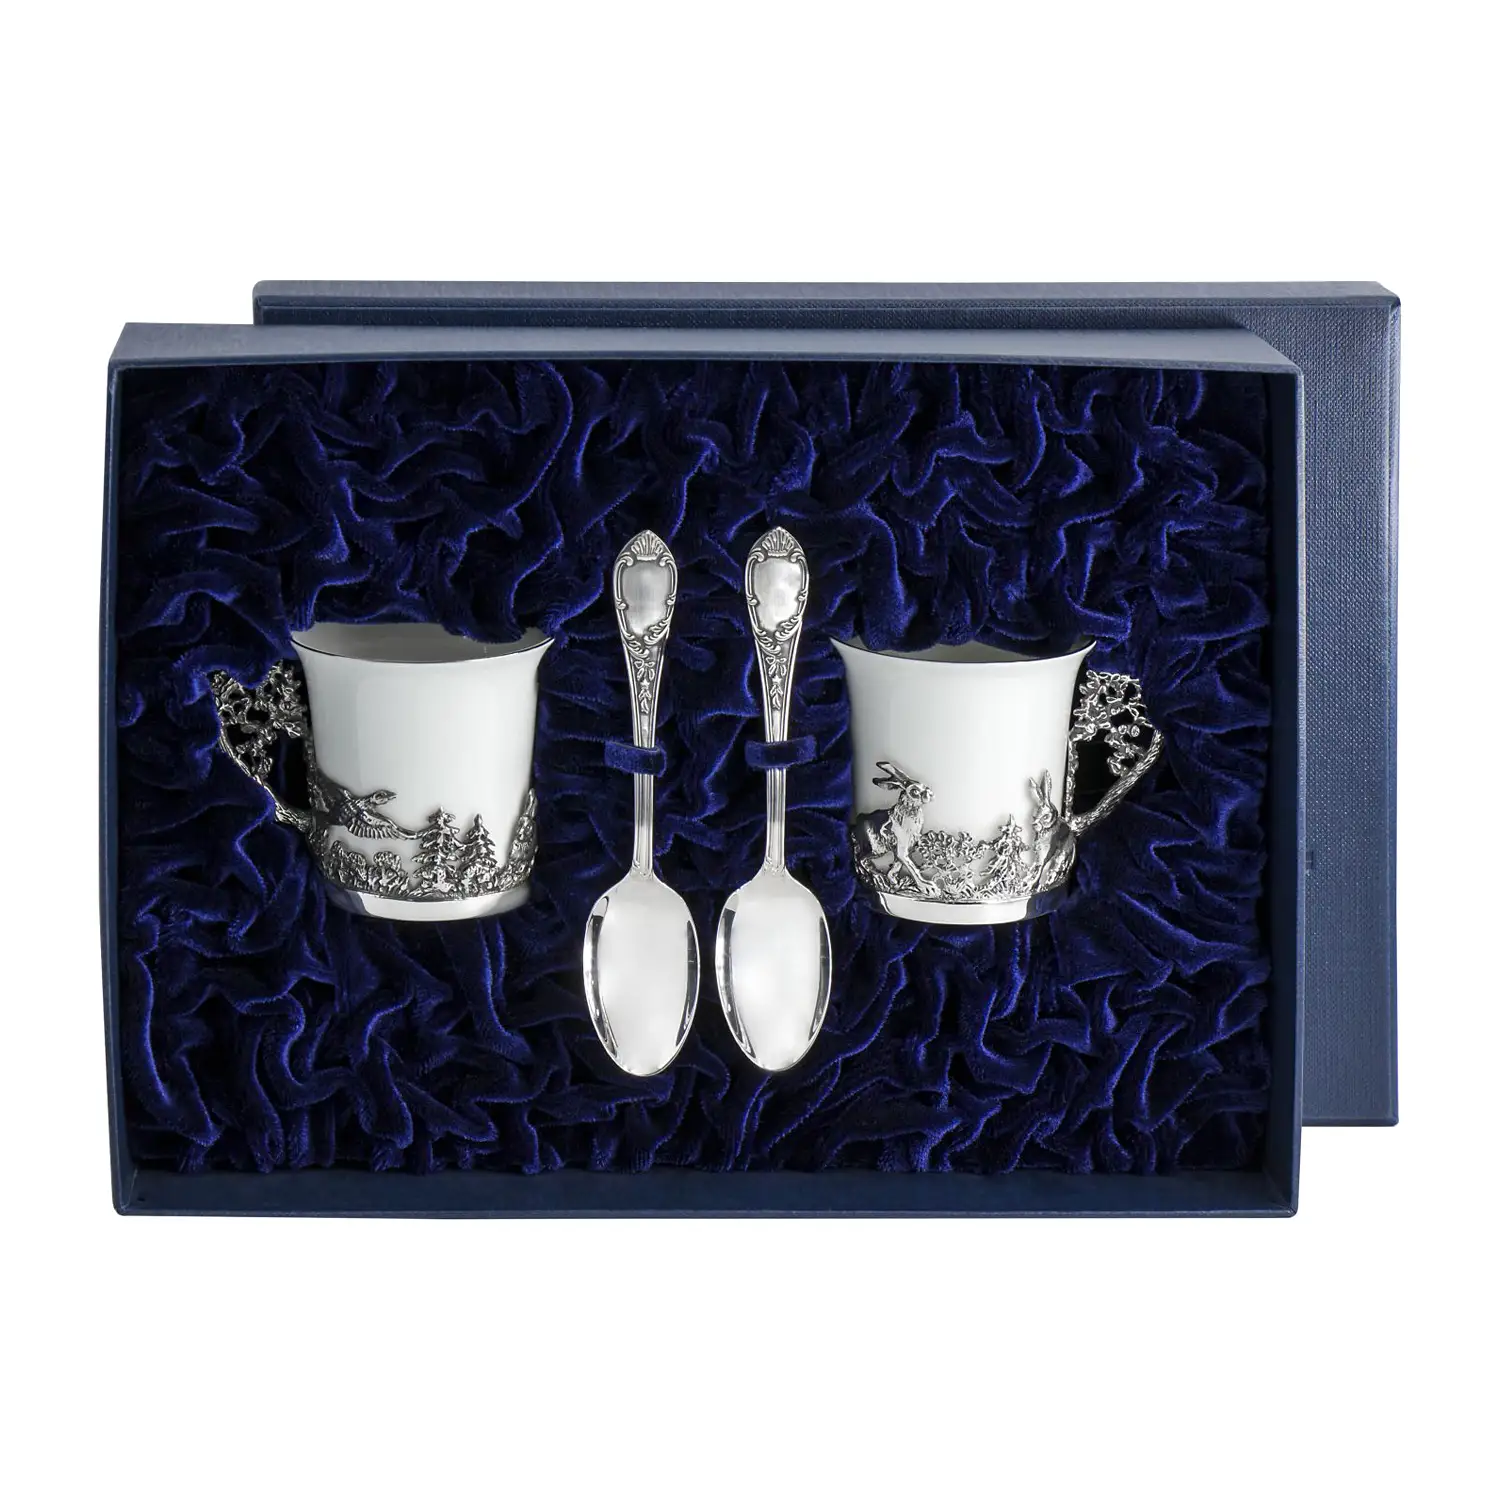 Набор кофейных чашек Зайцы: ложка, чашка (Серебро 925) набор серебряных кофейных чашек богема